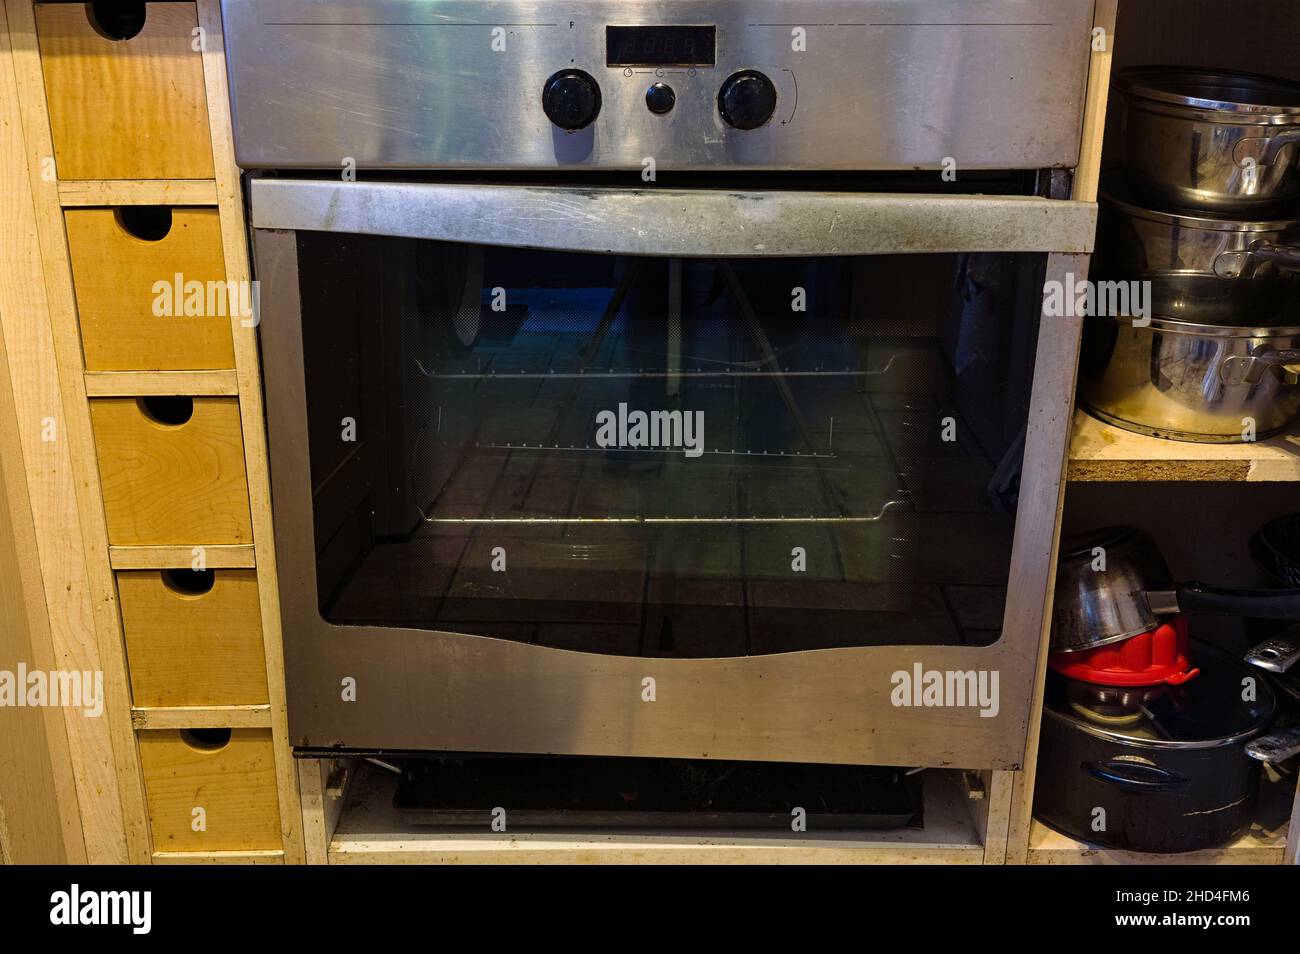 Porta rotta su un forno in acciaio inox in una cucina domestica Foto Stock